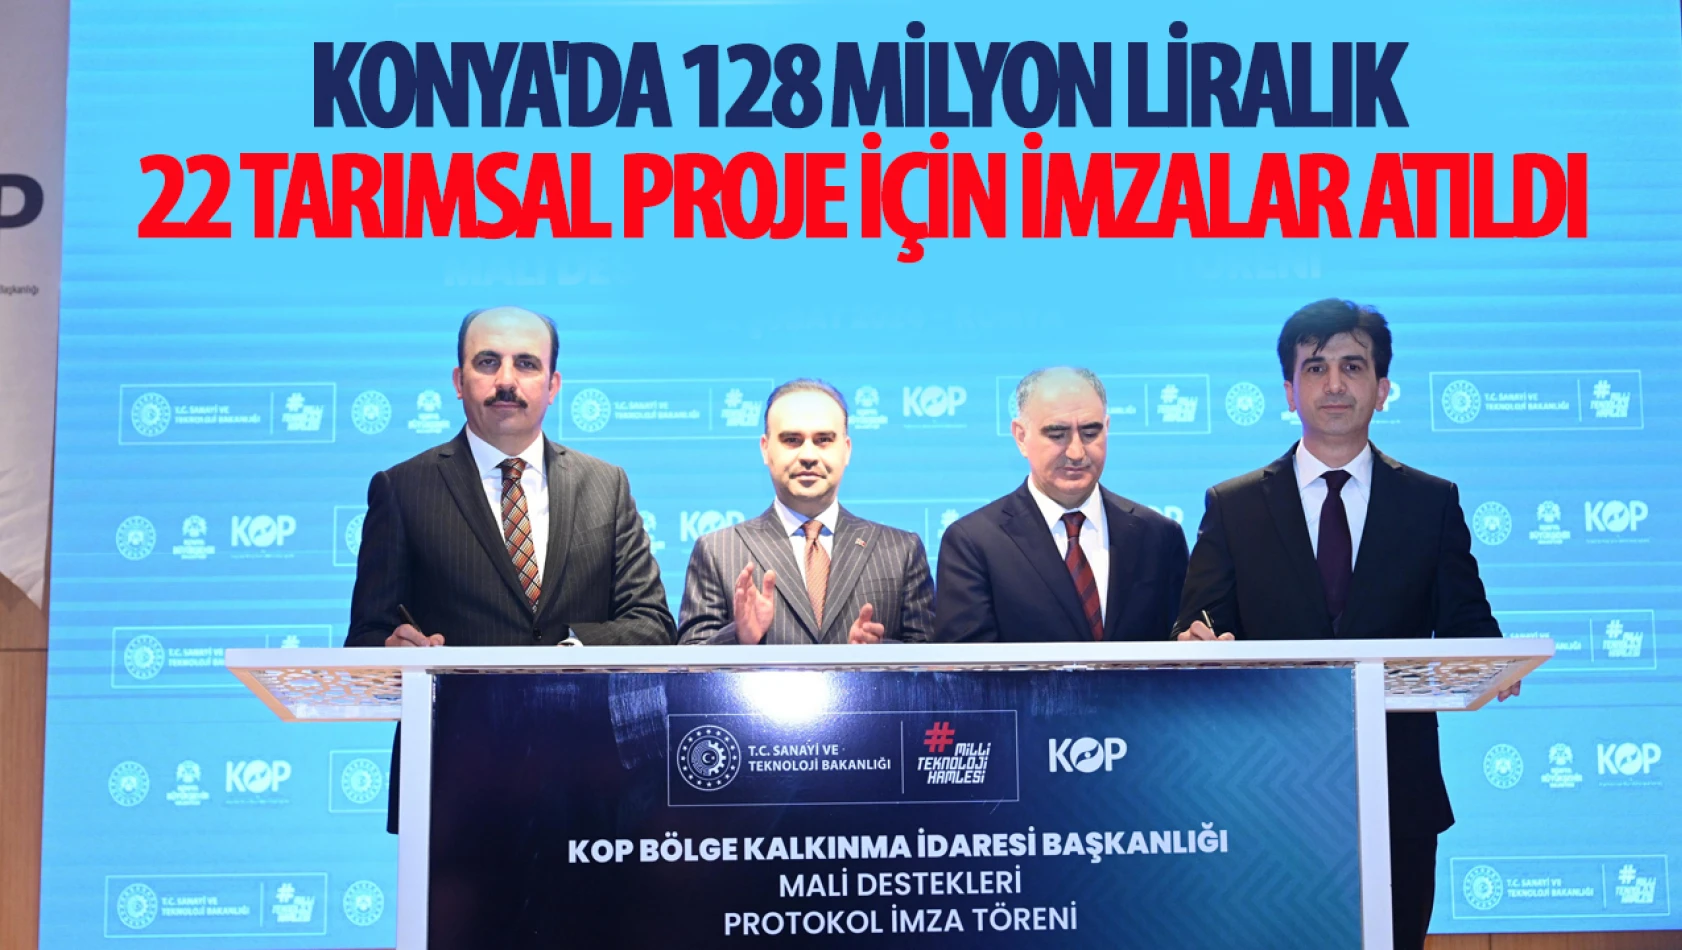 Konya'da 128 Milyon Liralık 22 Tarımsal Proje İçin İmzalar Atıldı